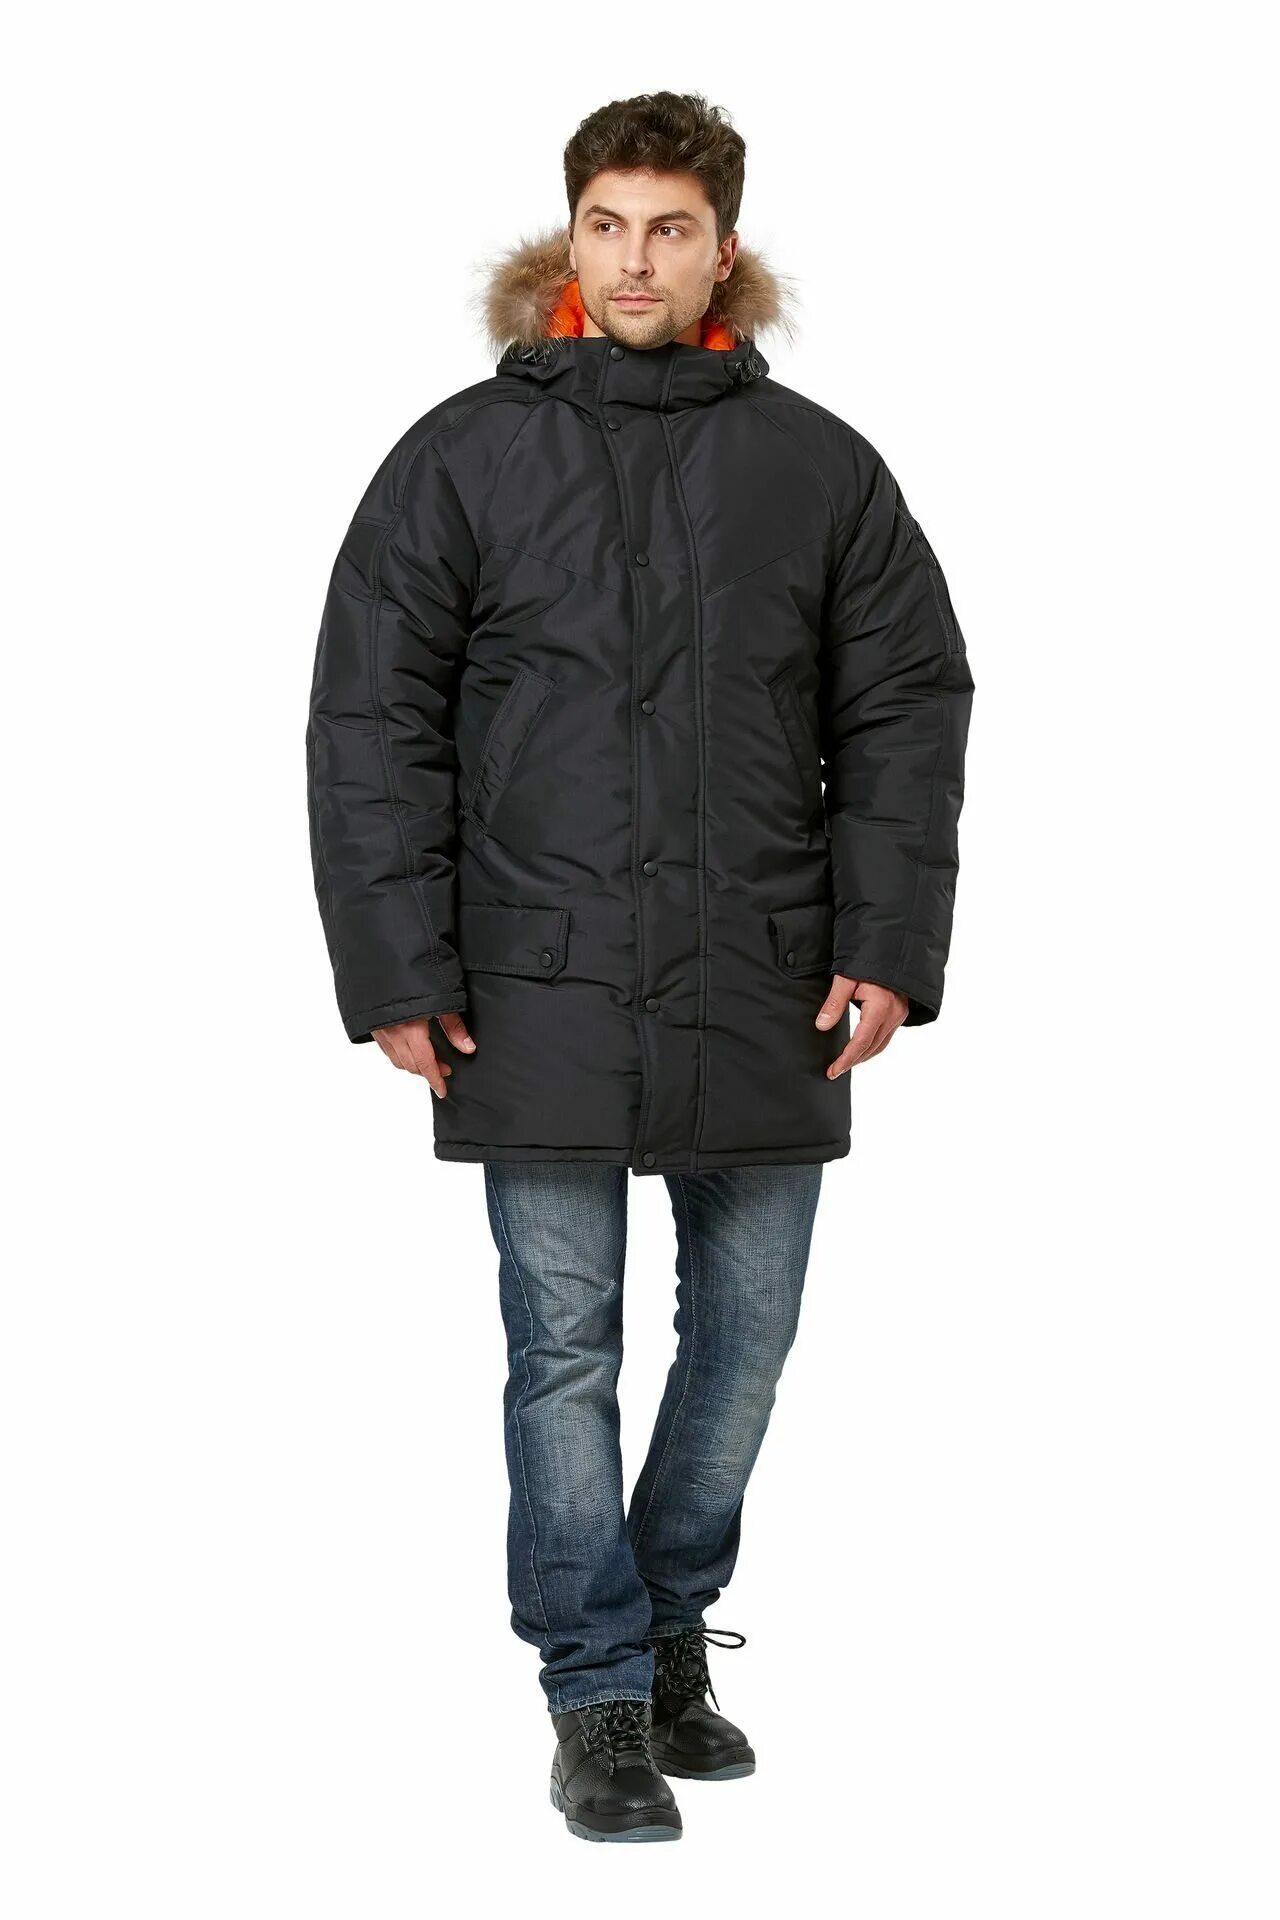 Аляски черные. Куртка Аляска кур 563. Куртка Аляска удлиненная (черная, 48-50/170-176). Куртка "Аляска" удлиненная черный кур563. Куртка мужская зимняя «Аляска-2» Техноавиа.